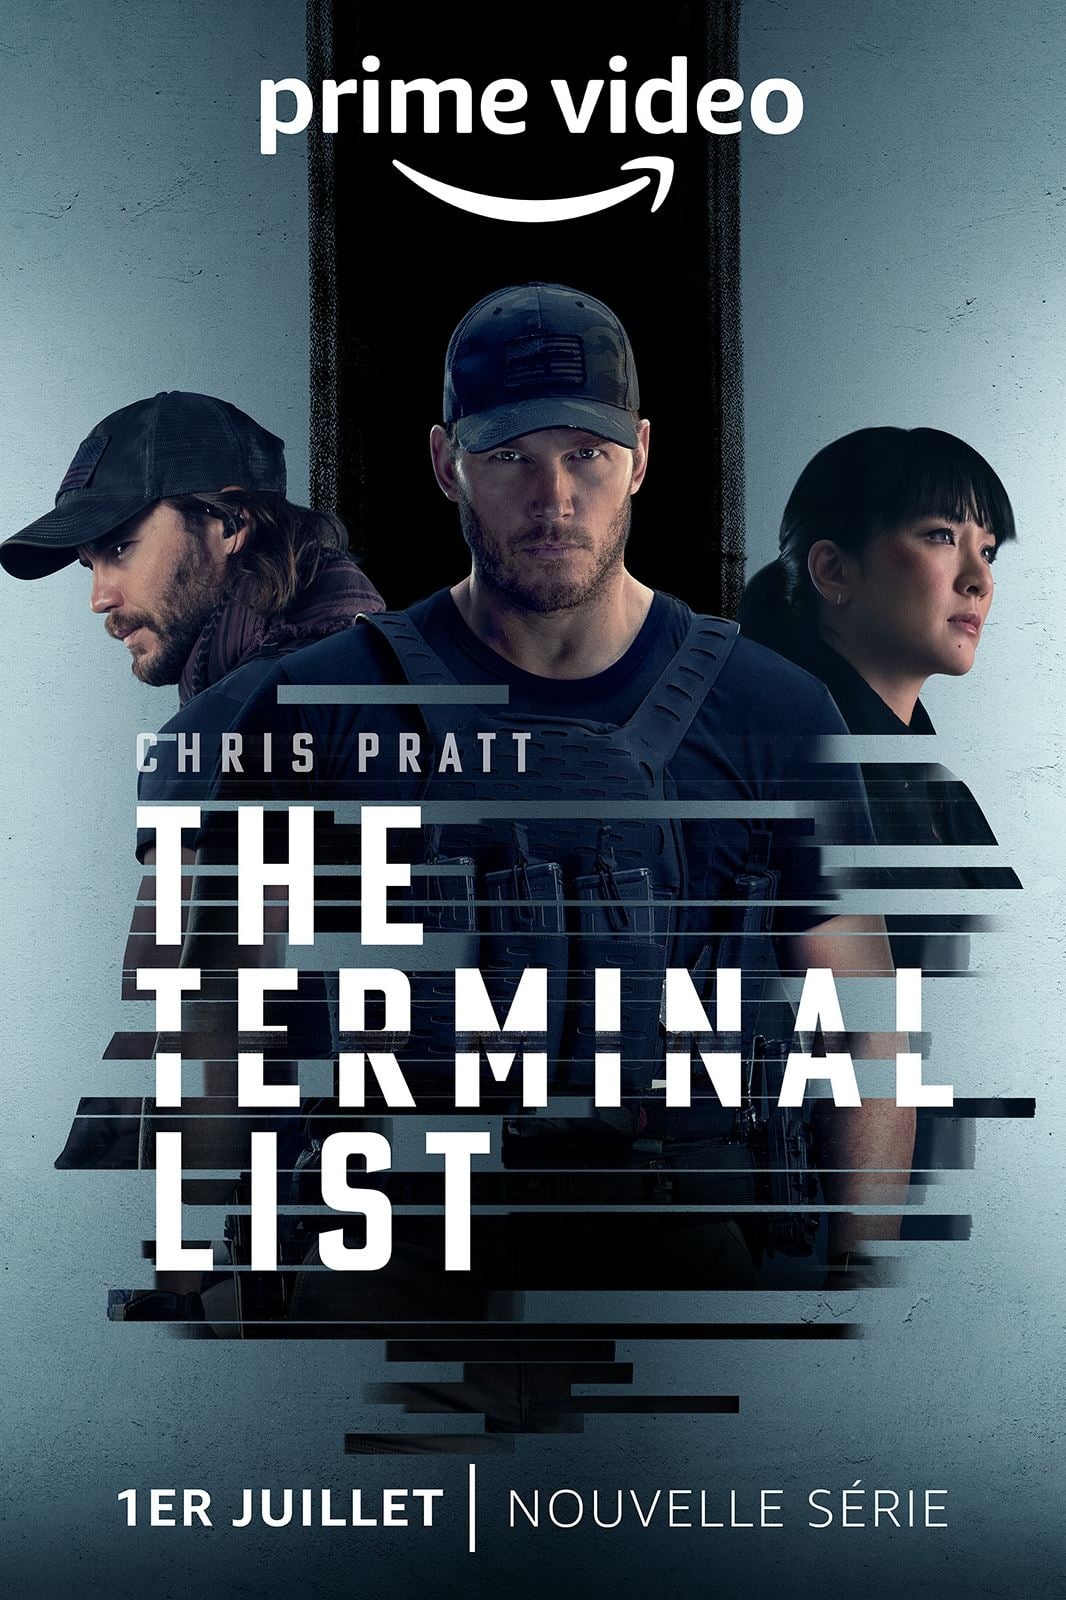 Affiche de la série The Terminal List poster